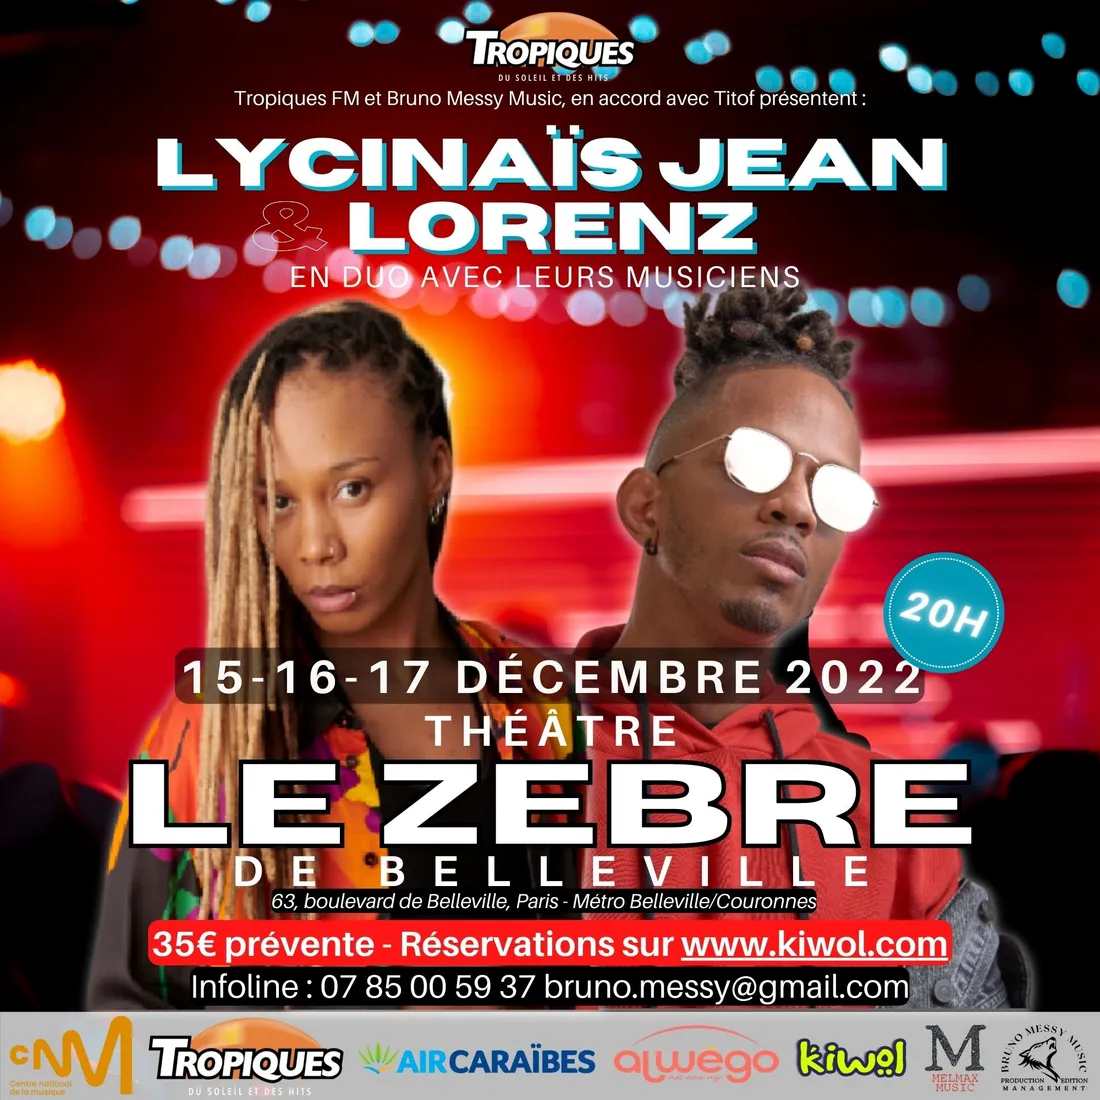 L'évènement Tropiques FM : Lycinais Jean en concert  ! 